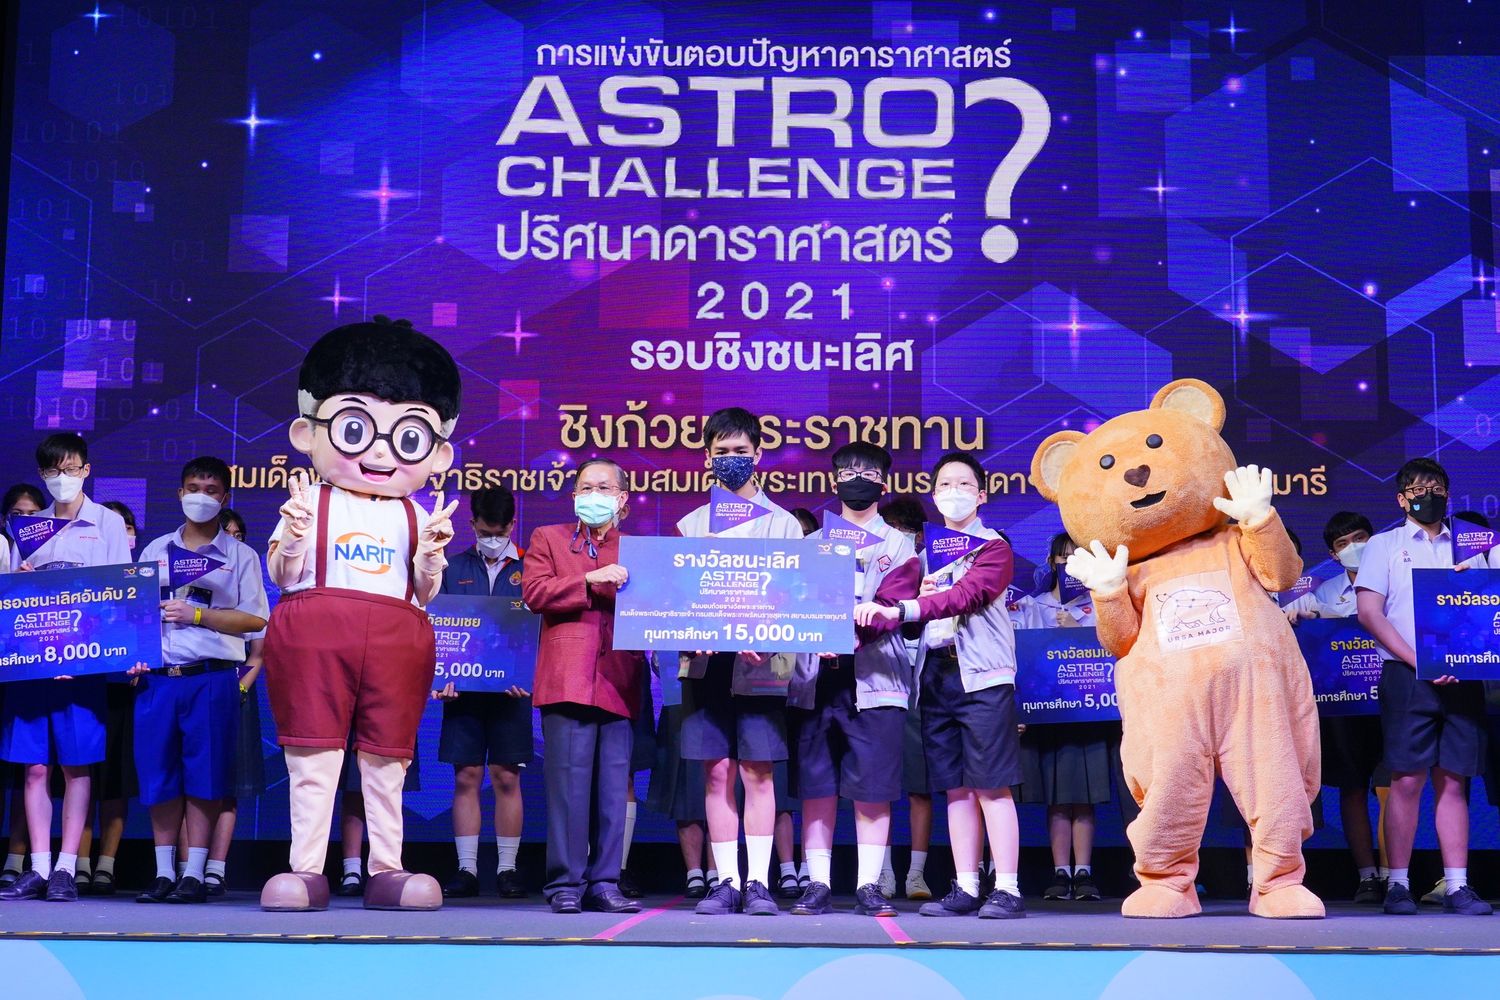 ทีม Rickrolled จากโรงเรียนสวนกุหลาบวิทยาลัย คว้ารางวัลสุดยอดเยาวชนคนดาราศาสตร์  “Astro Challenge 2021 : ปริศนาดาราศาสตร์ ประจำปี 2564”